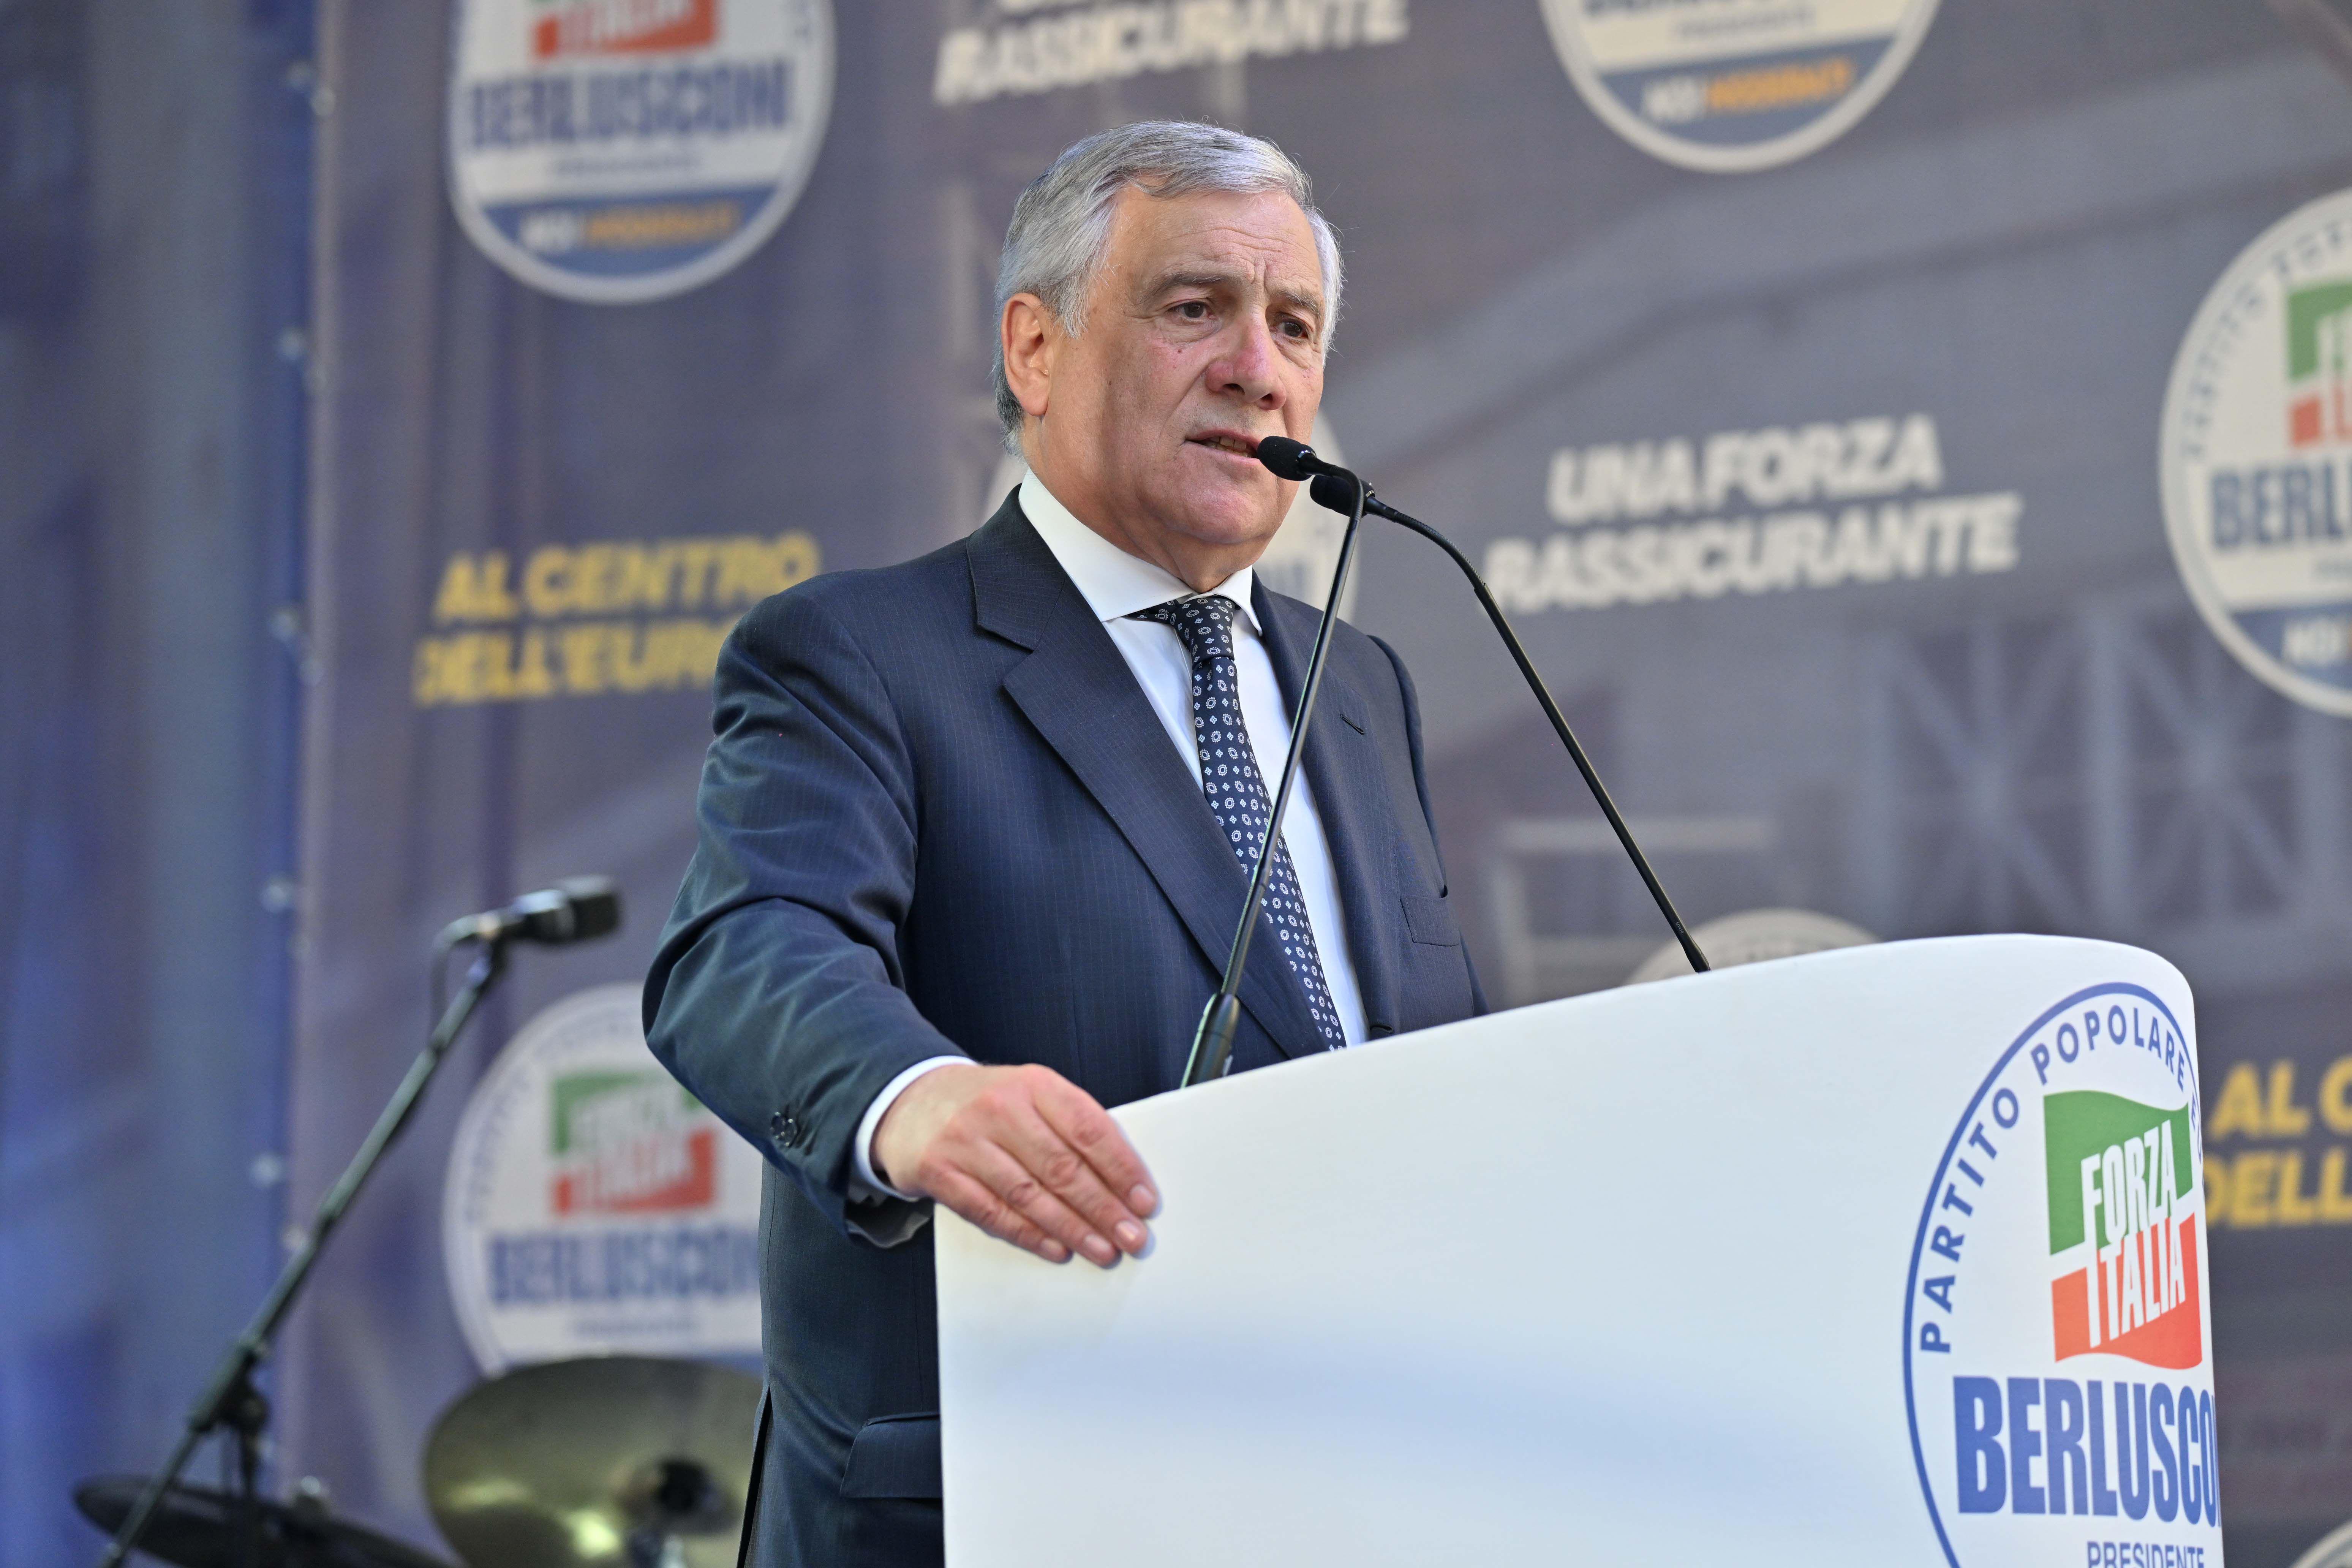 Europee - Tajani: Avanzata Afd ci preoccupa